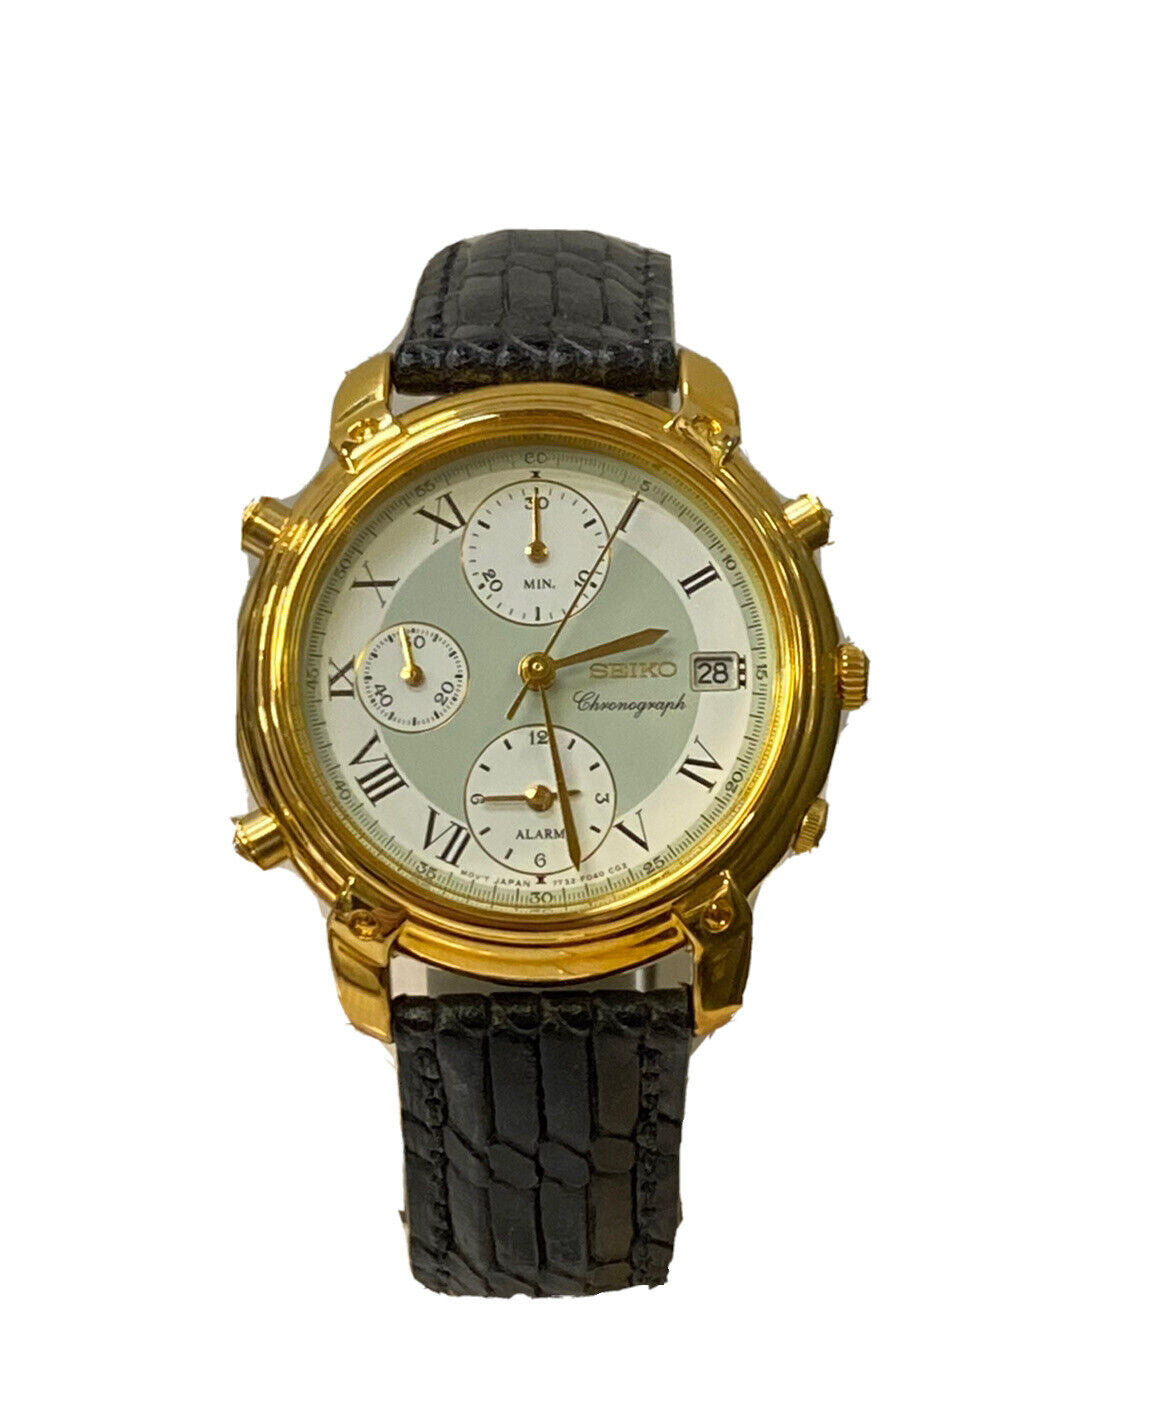 Seiko Alarm chronograph Watch New With Tags SDW710 – CDMJewelry